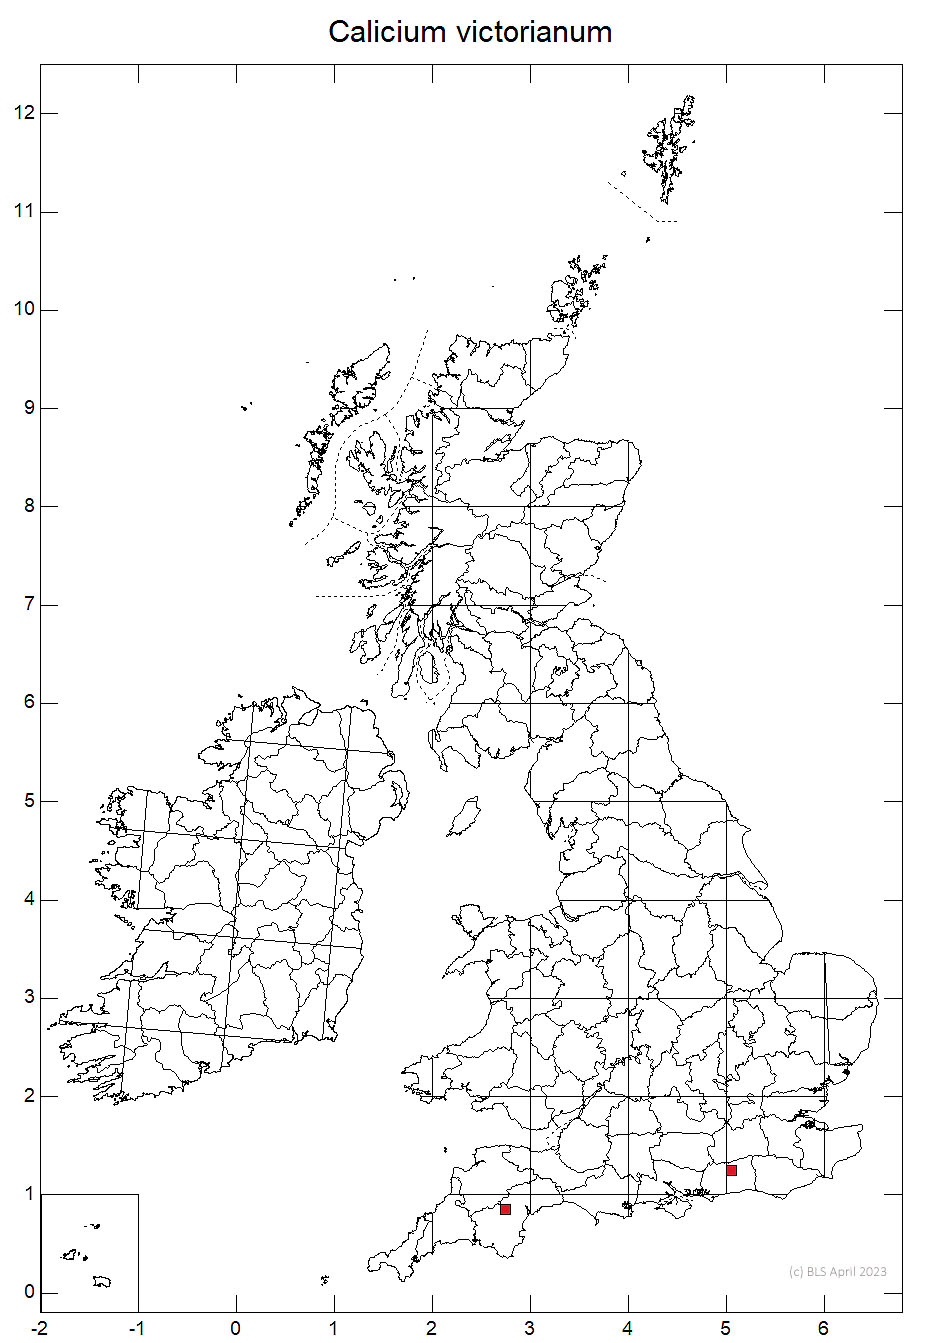 Calicium victorianum 10km sq distribution map